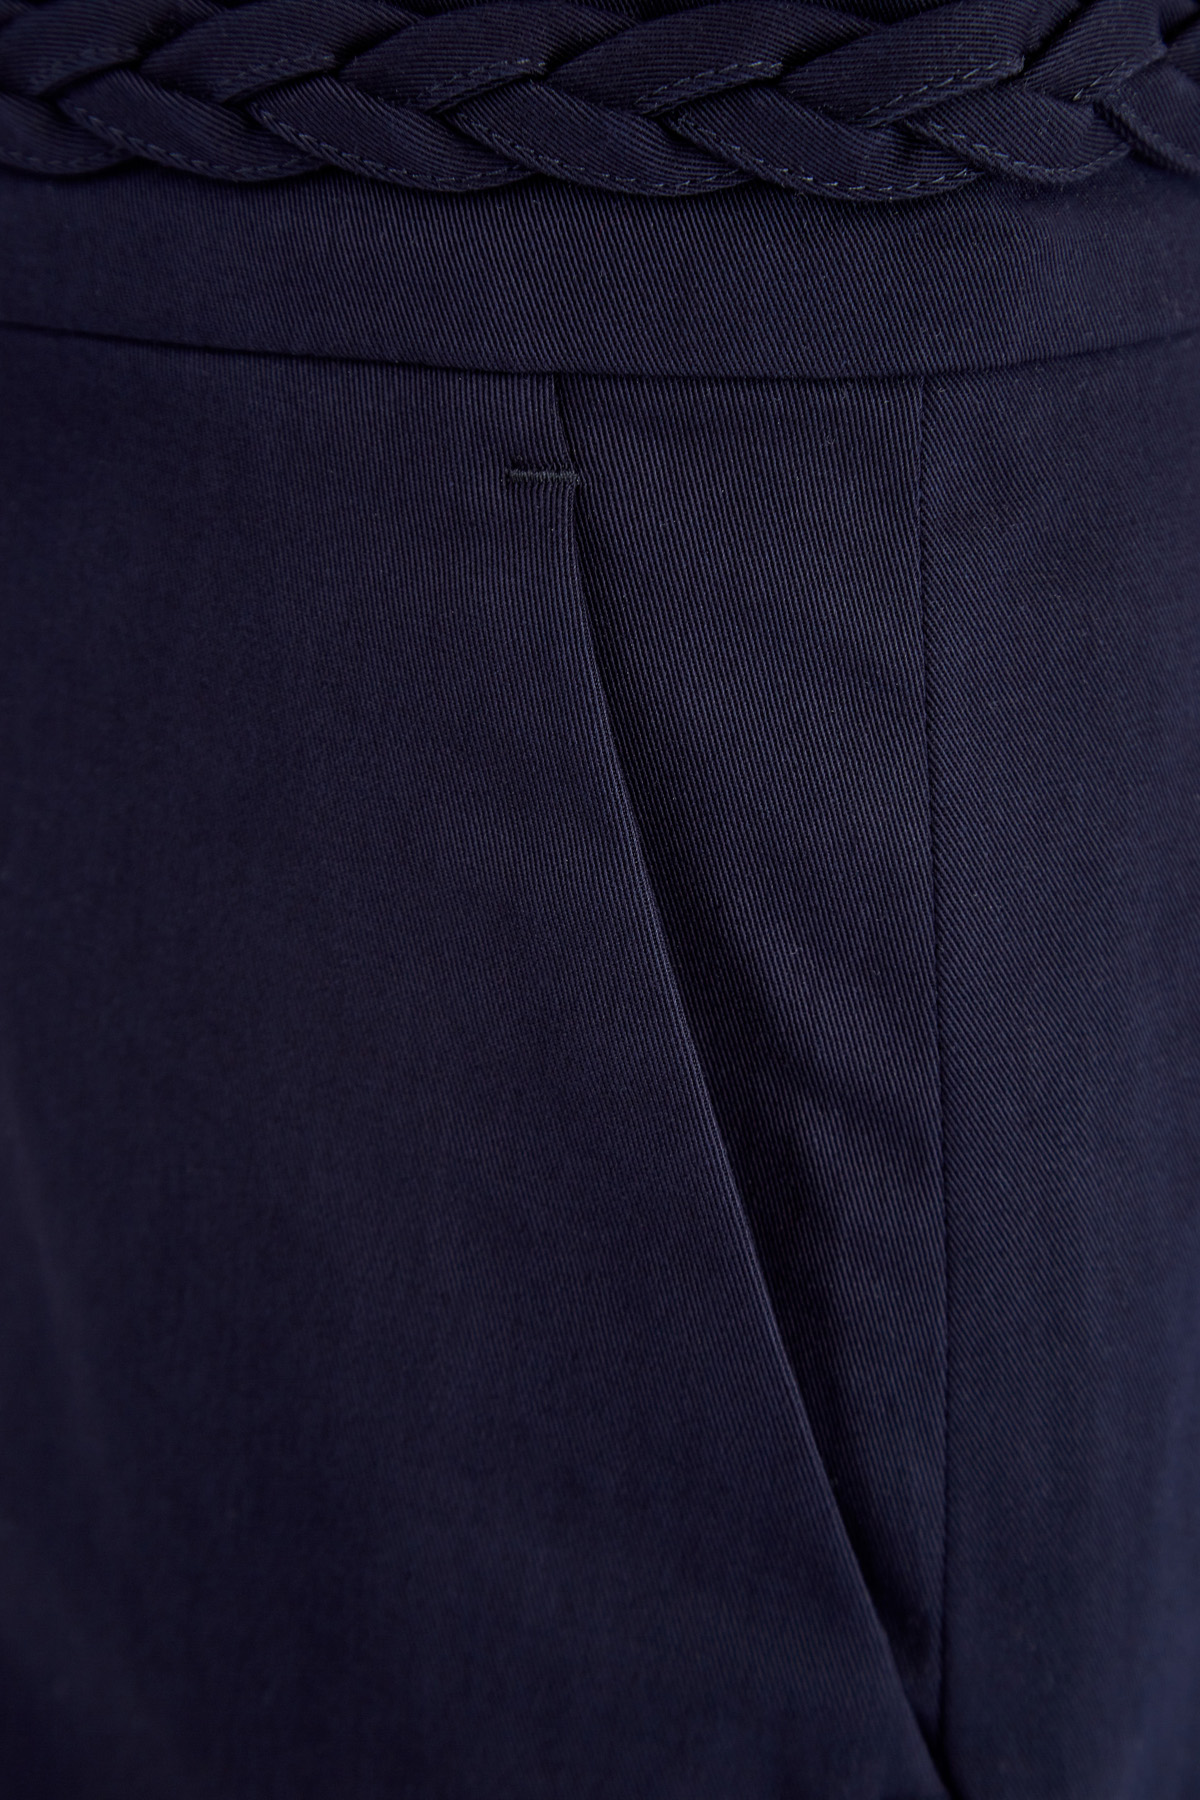 Шорты в стиле чинос на высокой посадке с плетеной отделкой REDVALENTINO, цвет синий, размер 46 - фото 5